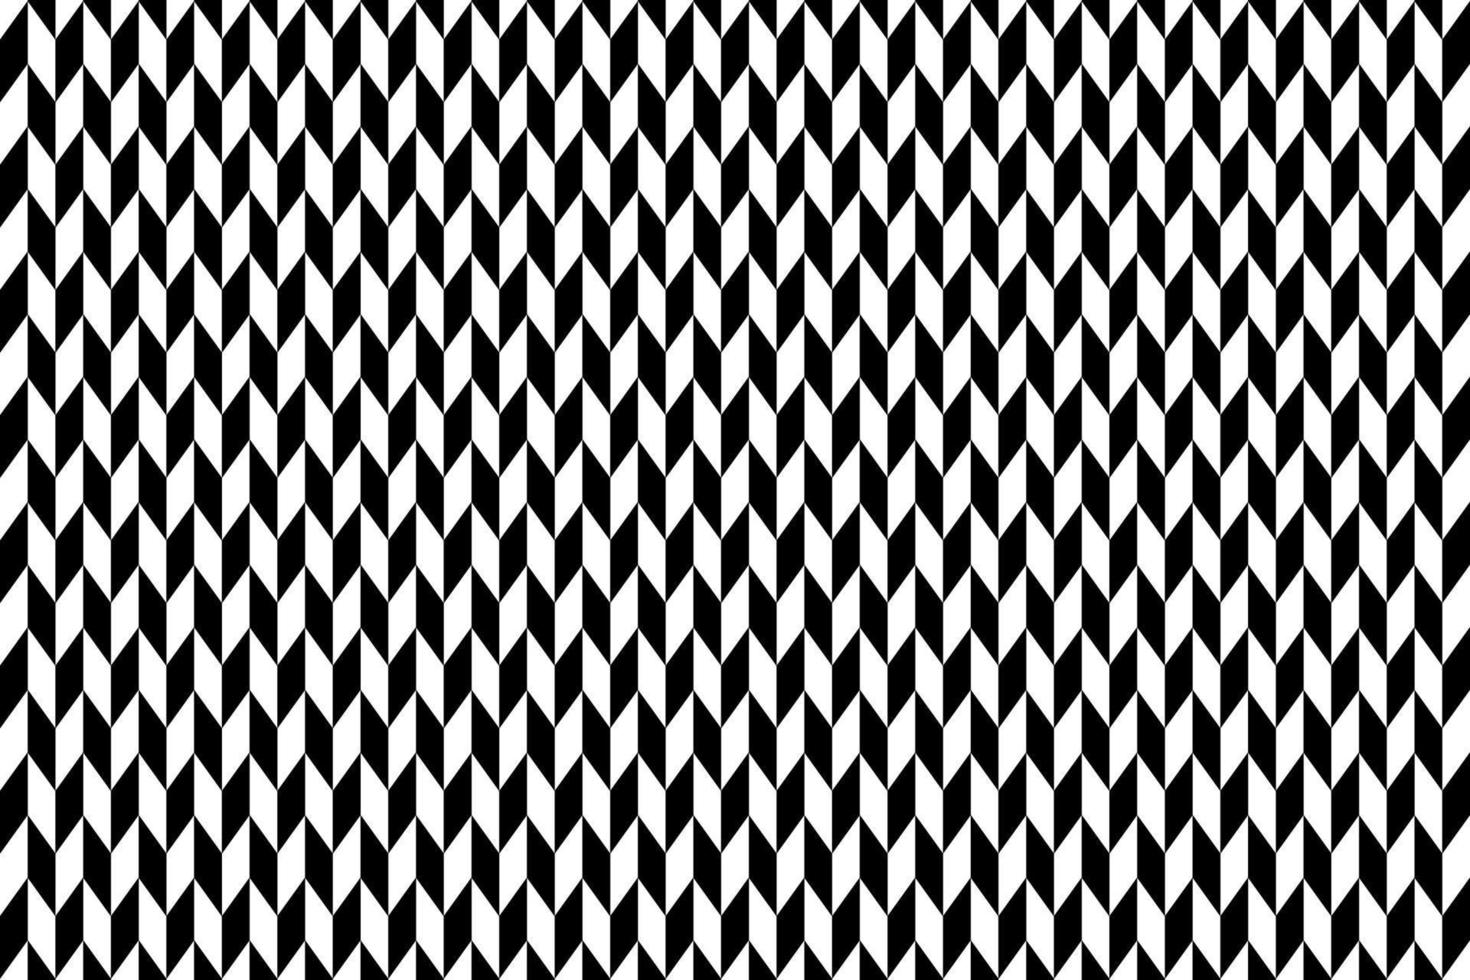 patrón de chevron en blanco y negro. ilustración vectorial vector